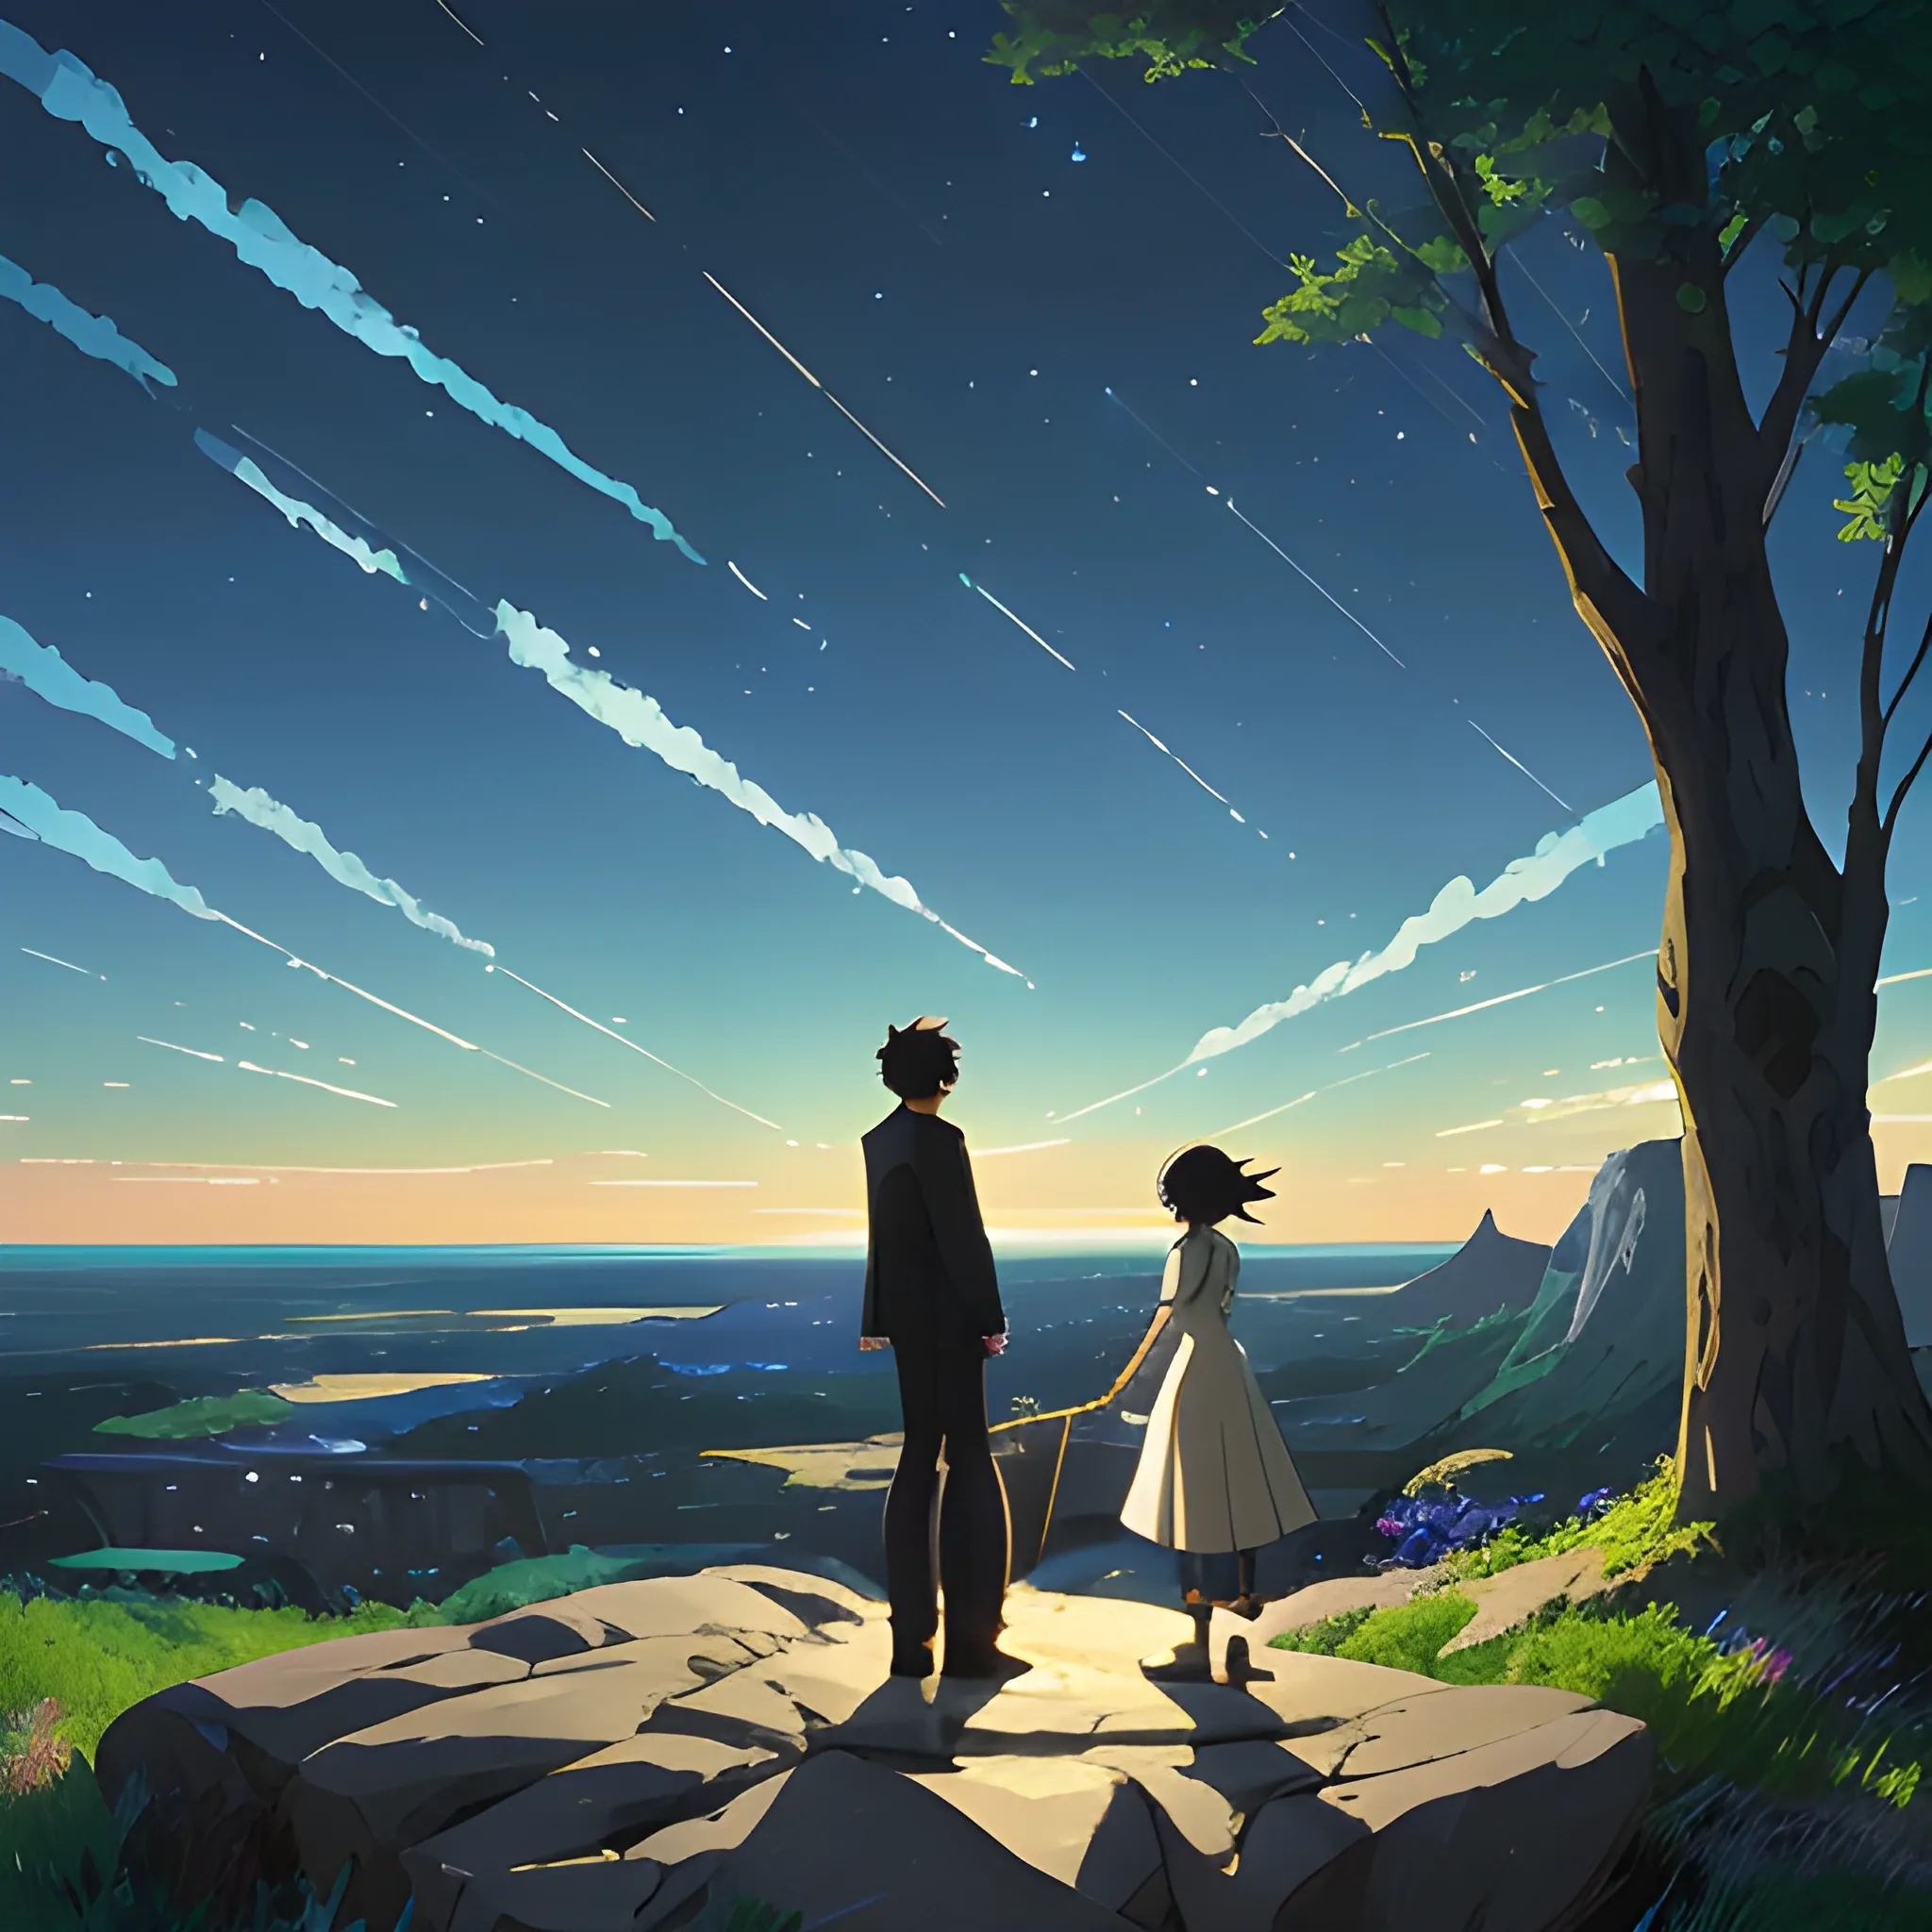 prompthunt beautiful anime scenery by makoto shinkai